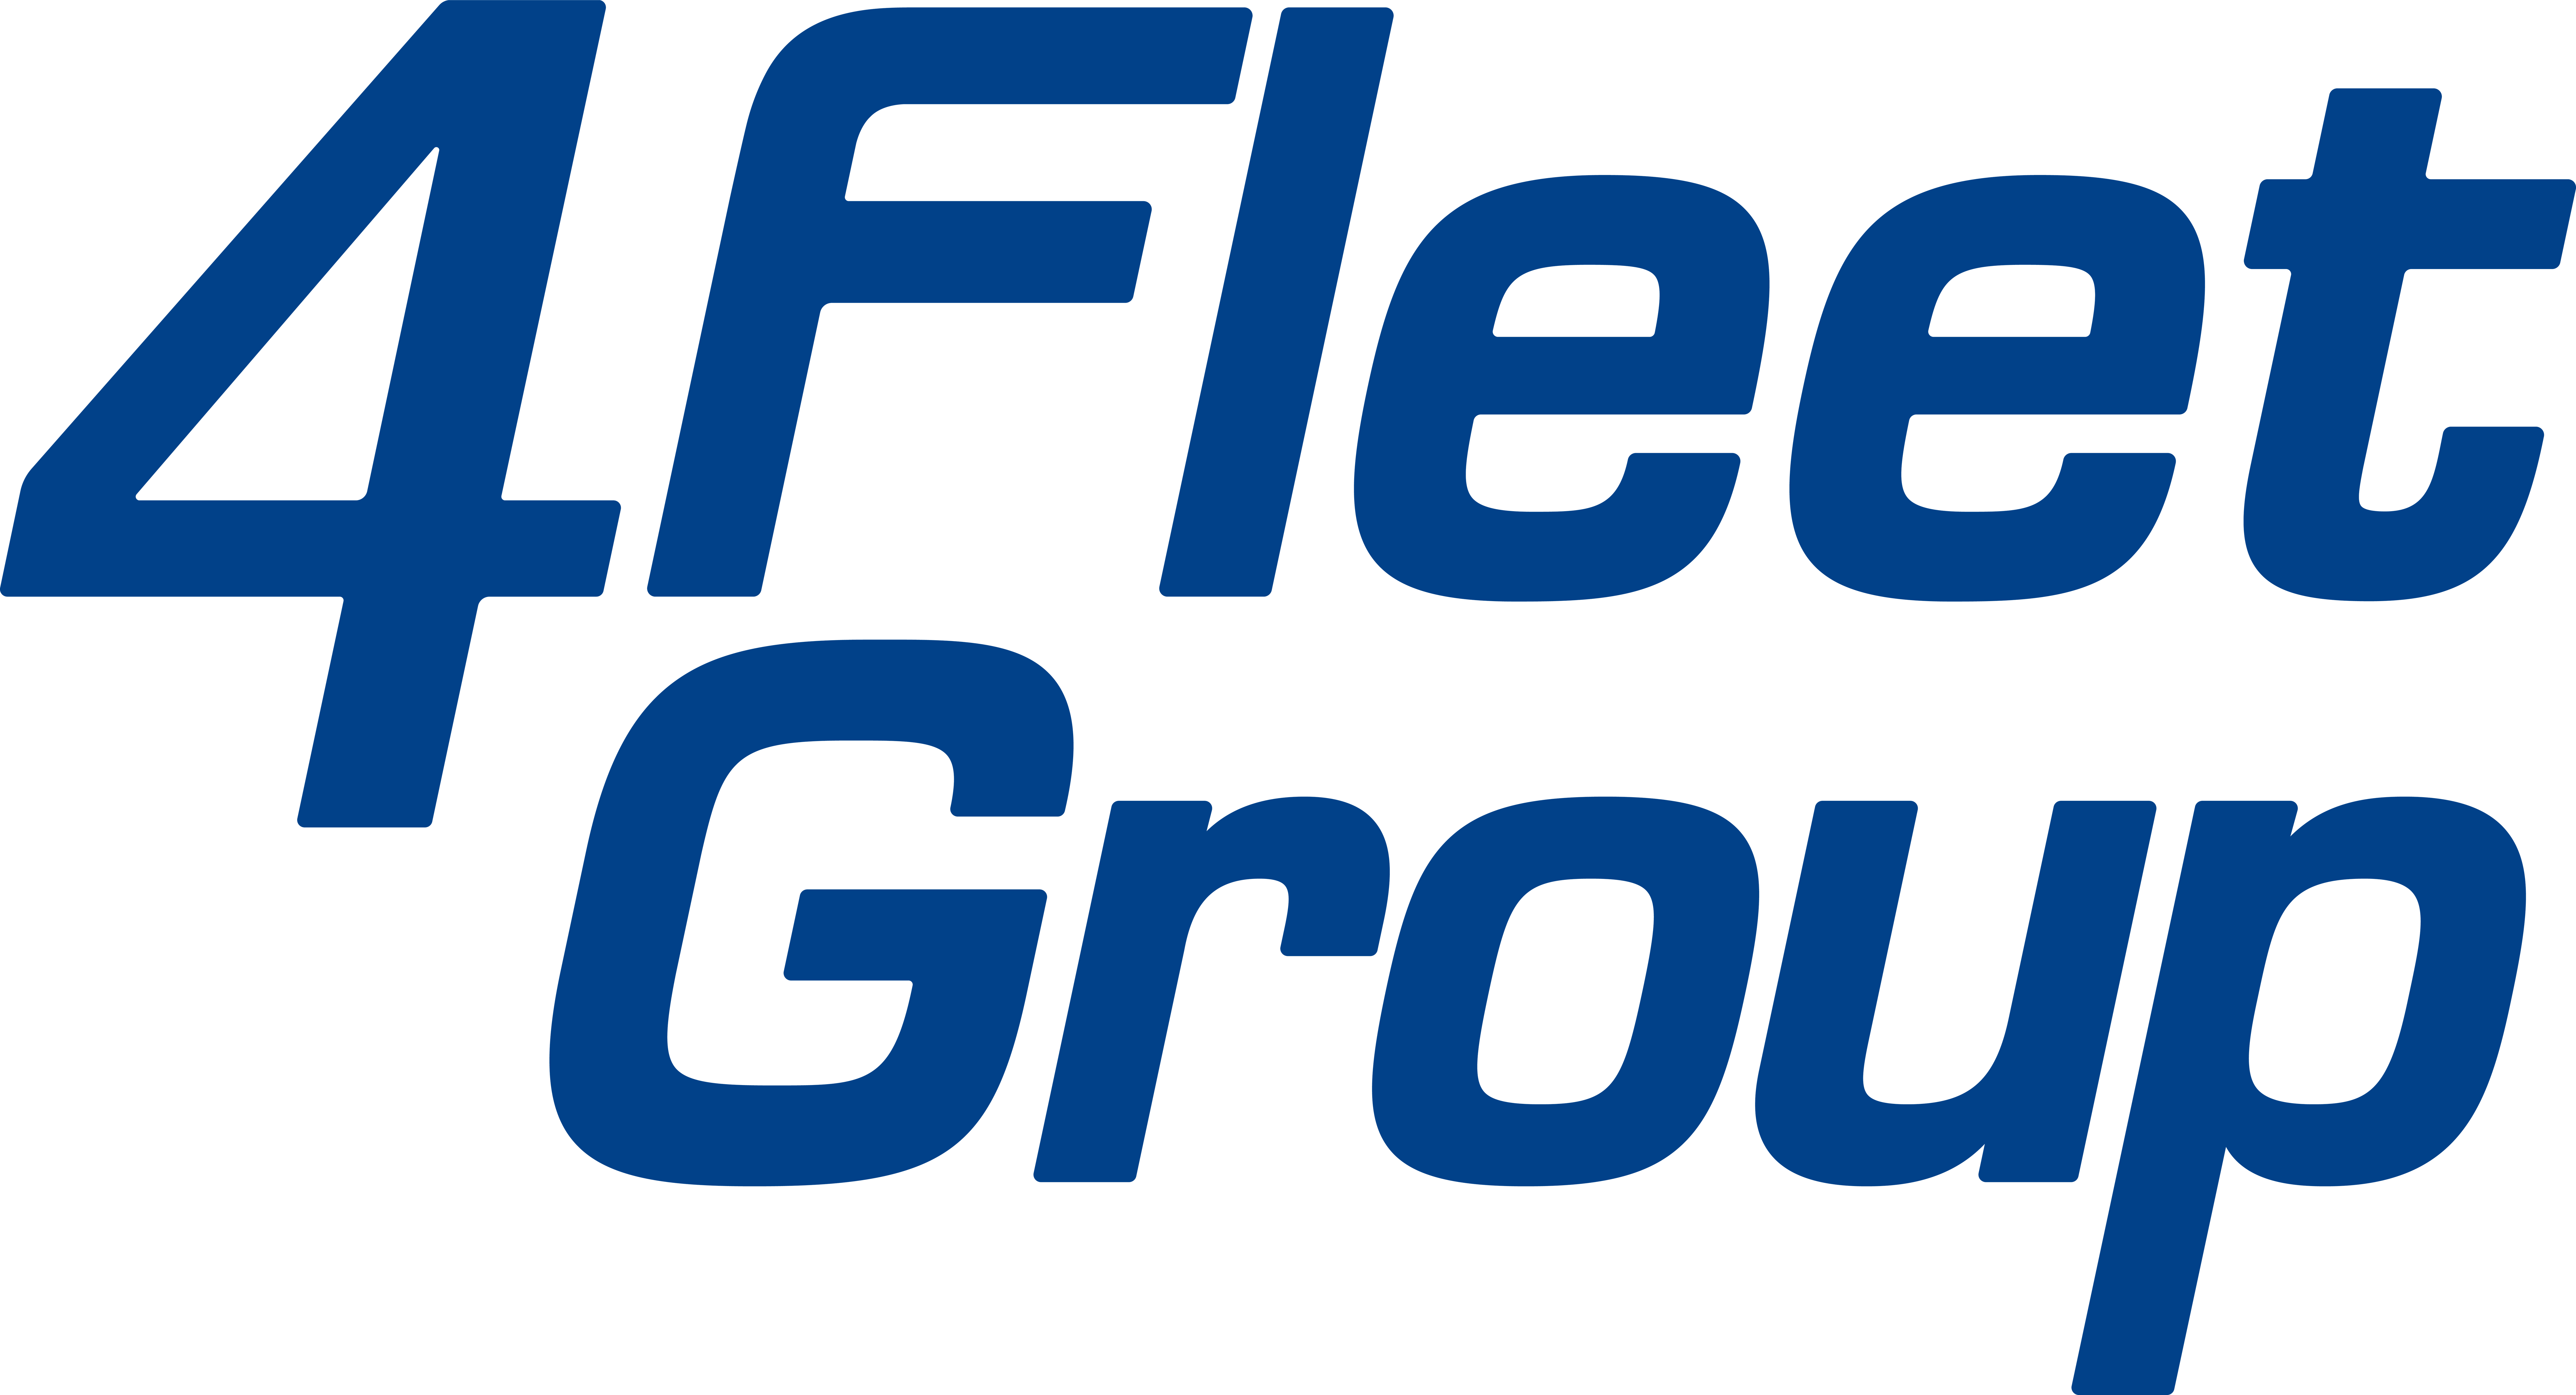 4 Fleet Group